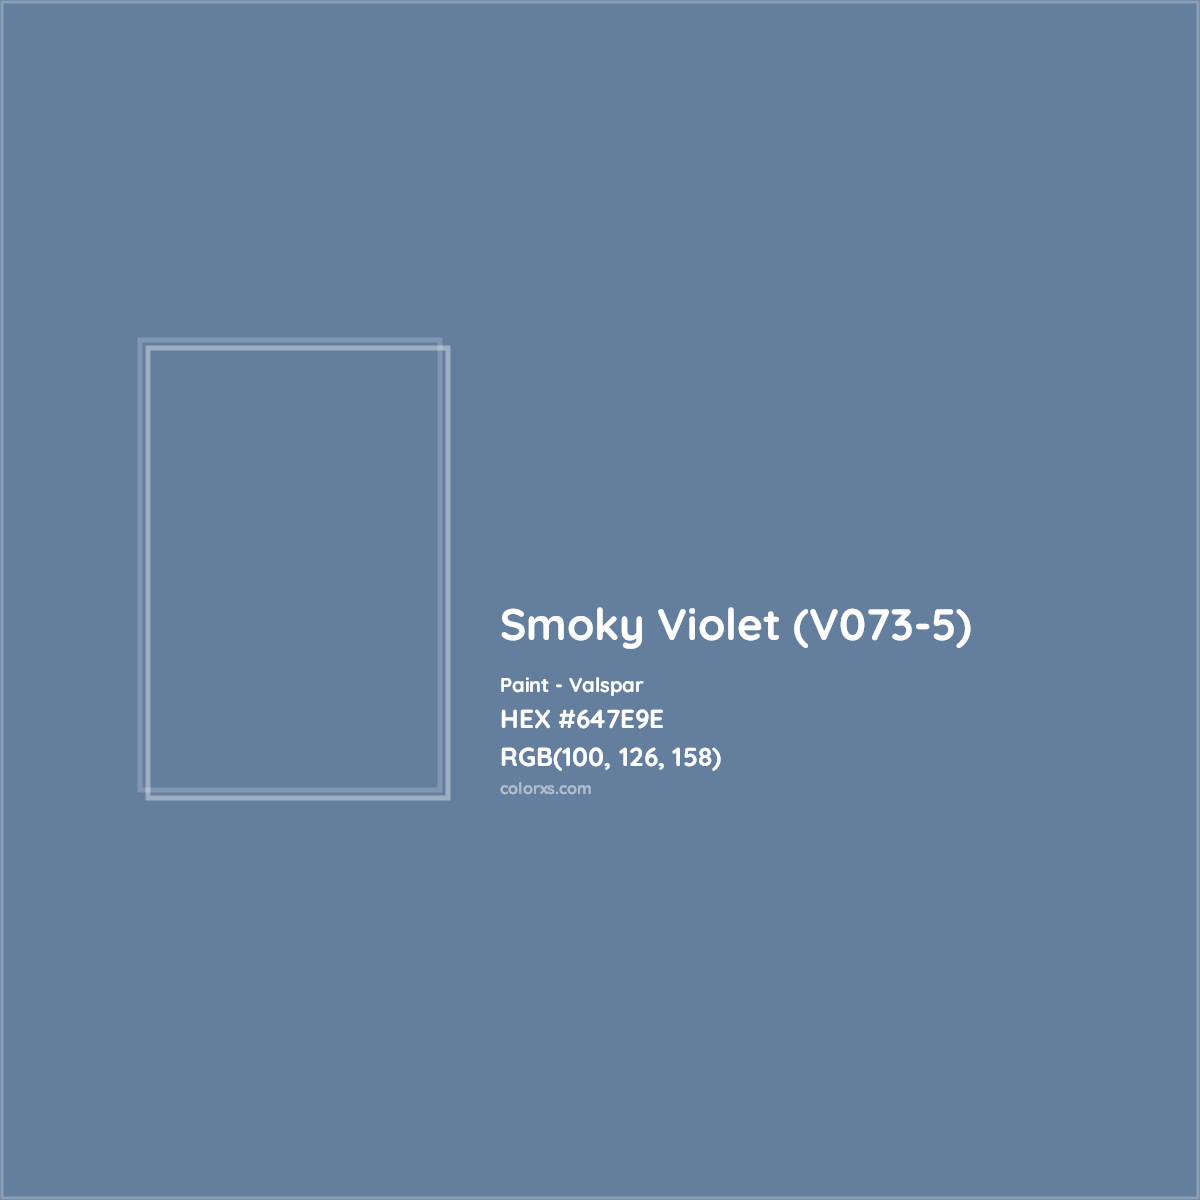 HEX #647E9E Smoky Violet (V073-5) Paint Valspar - Color Code